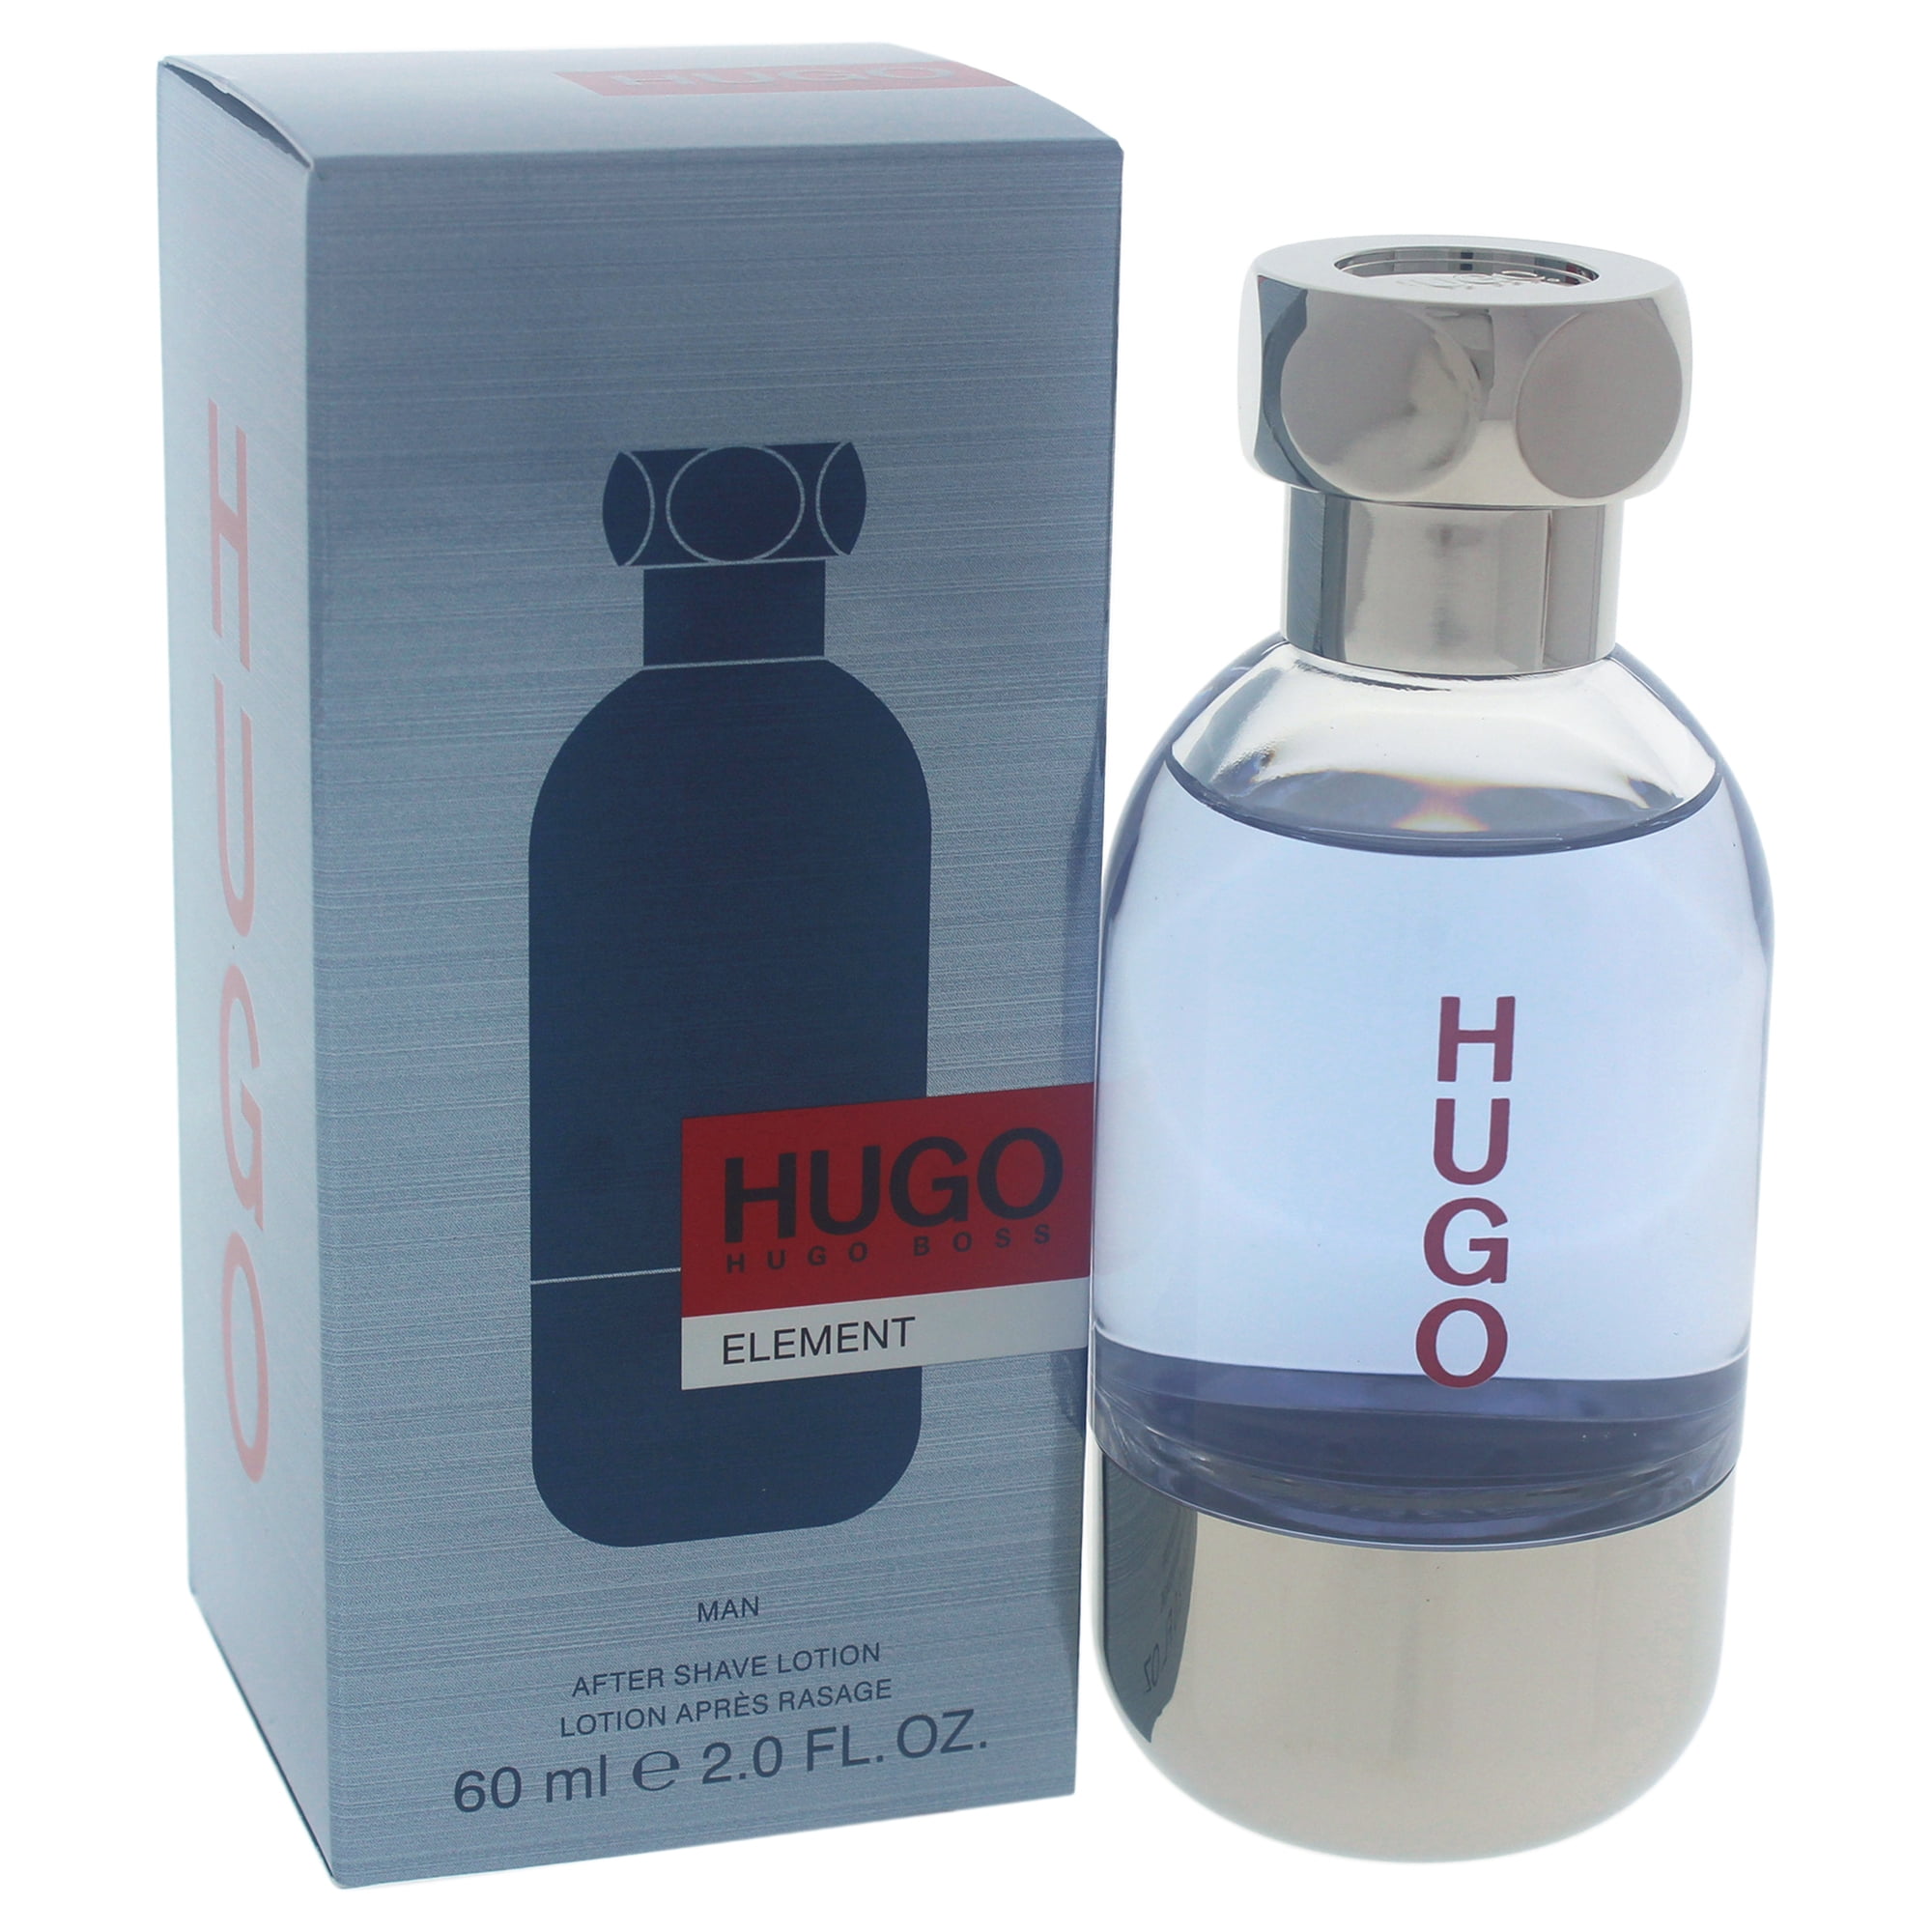 Hugo Element by Hugo Boss for Men - 2 oz After Shave Lotion | Walmart ...